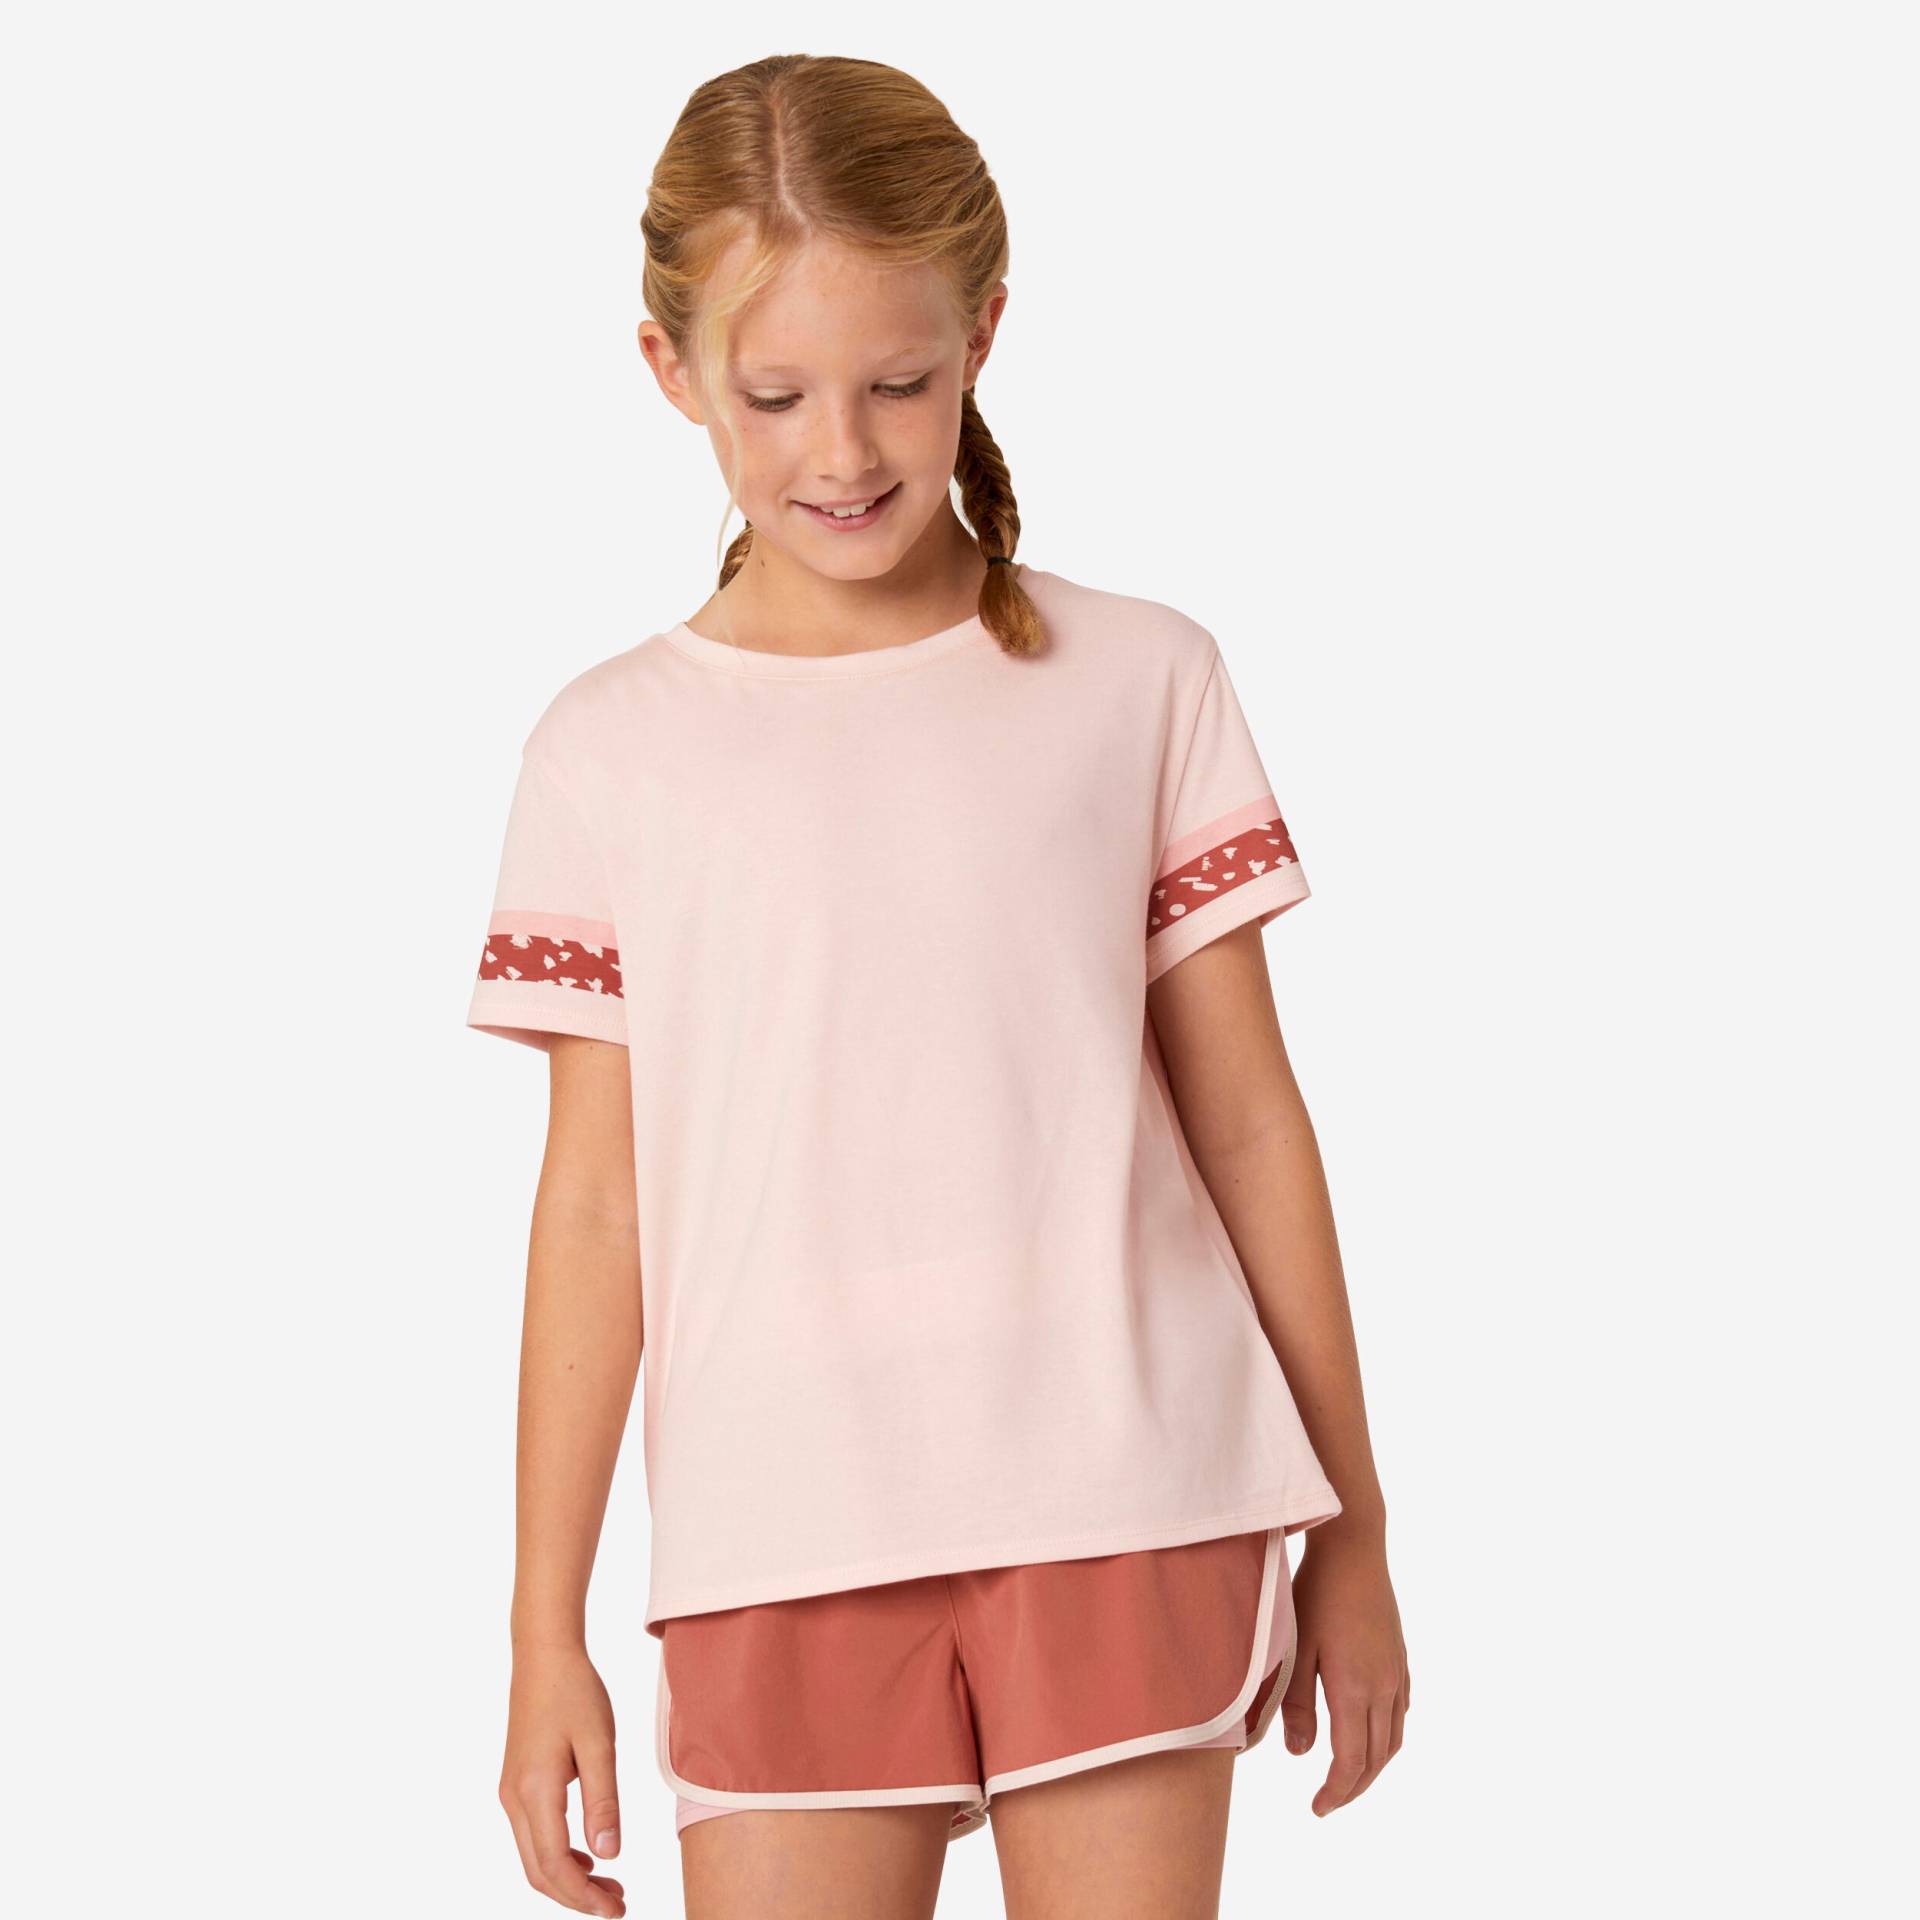 T-Shirt Kinder Mädchen Baumwolle - 500 rosa von Domyos